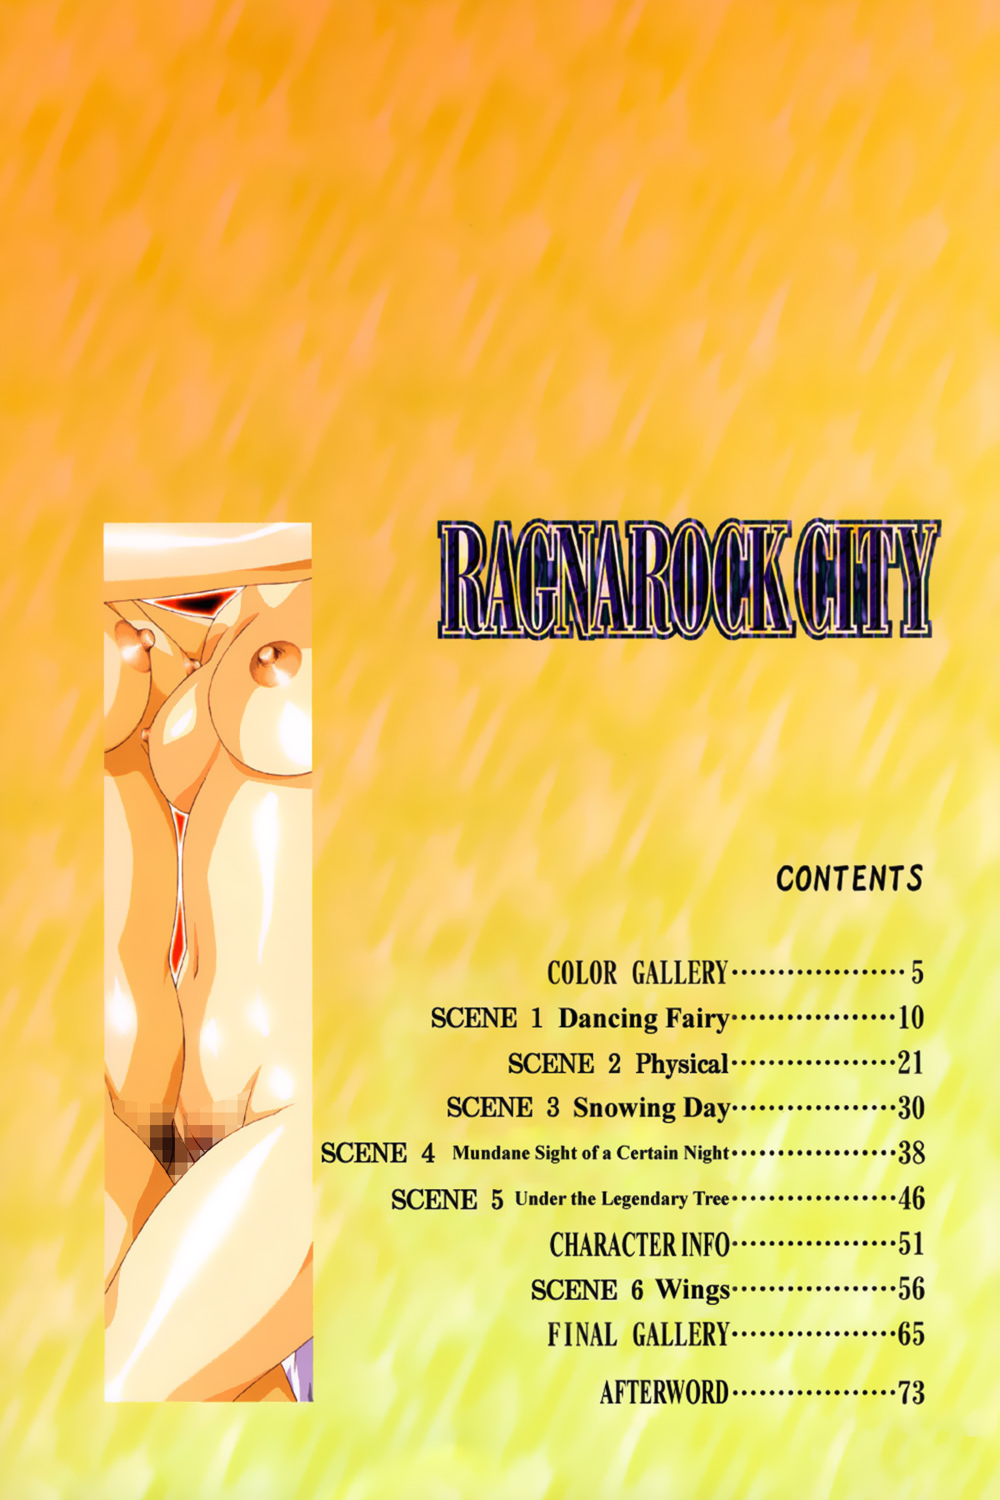 [Satoshi Urushihara] Ragnarock City [English] page 9 full